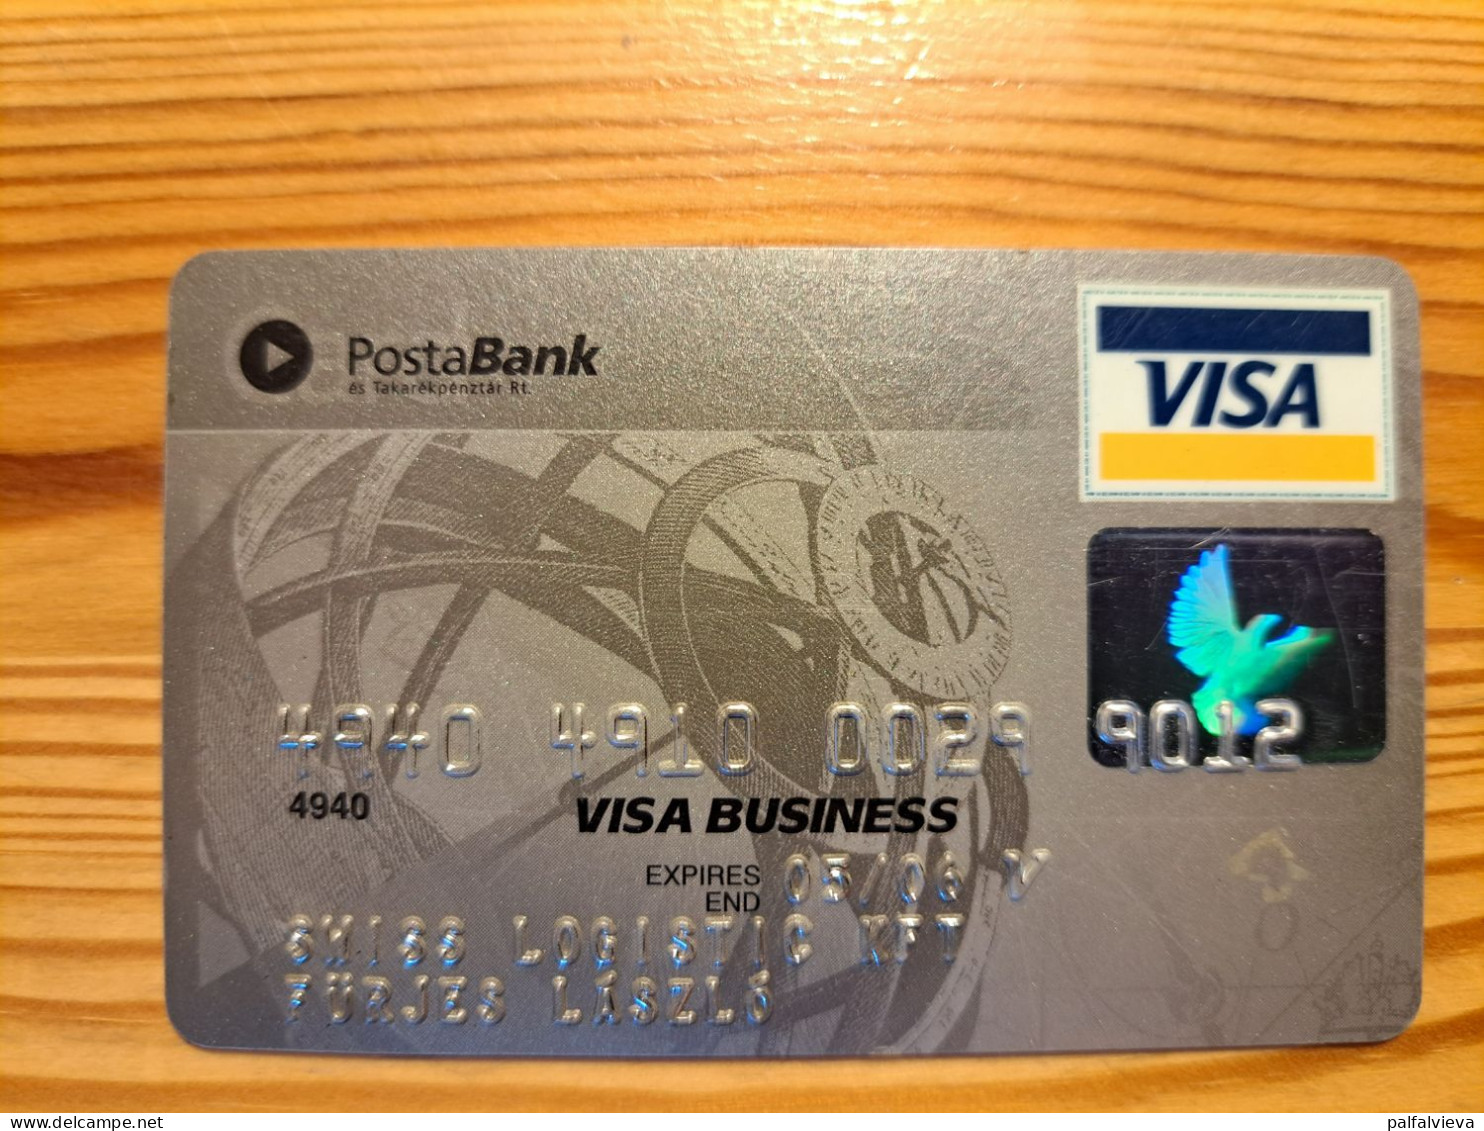 Posta Bank Credit Card Hungary - Geldkarten (Ablauf Min. 10 Jahre)